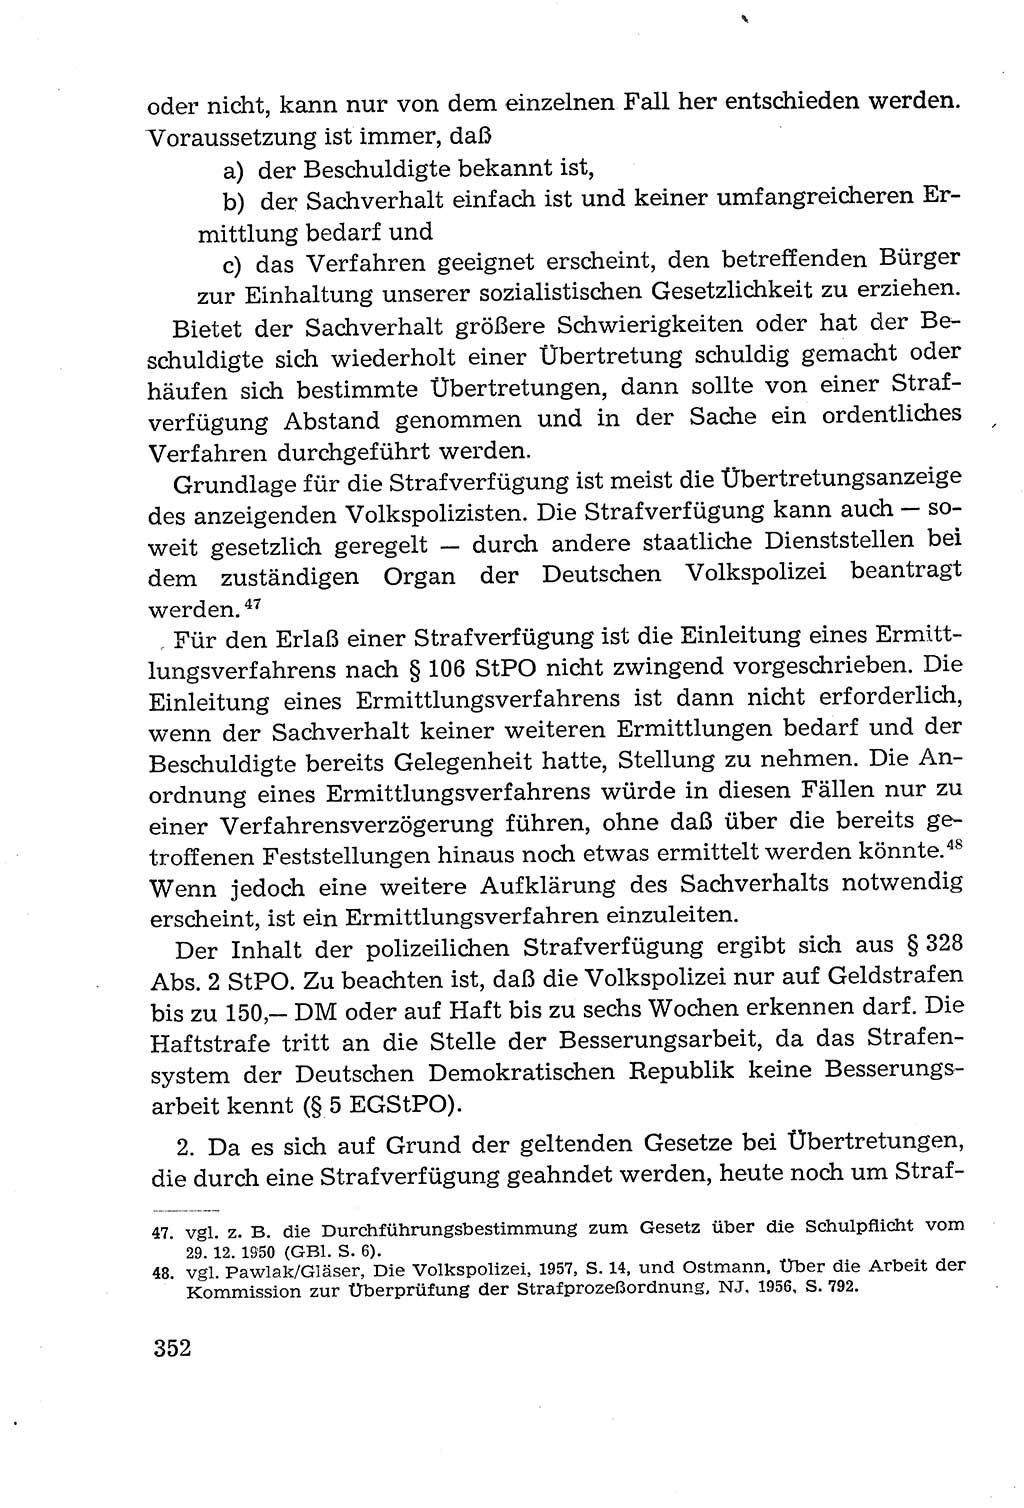 Leitfaden des Strafprozeßrechts der Deutschen Demokratischen Republik (DDR) 1959, Seite 352 (LF StPR DDR 1959, S. 352)